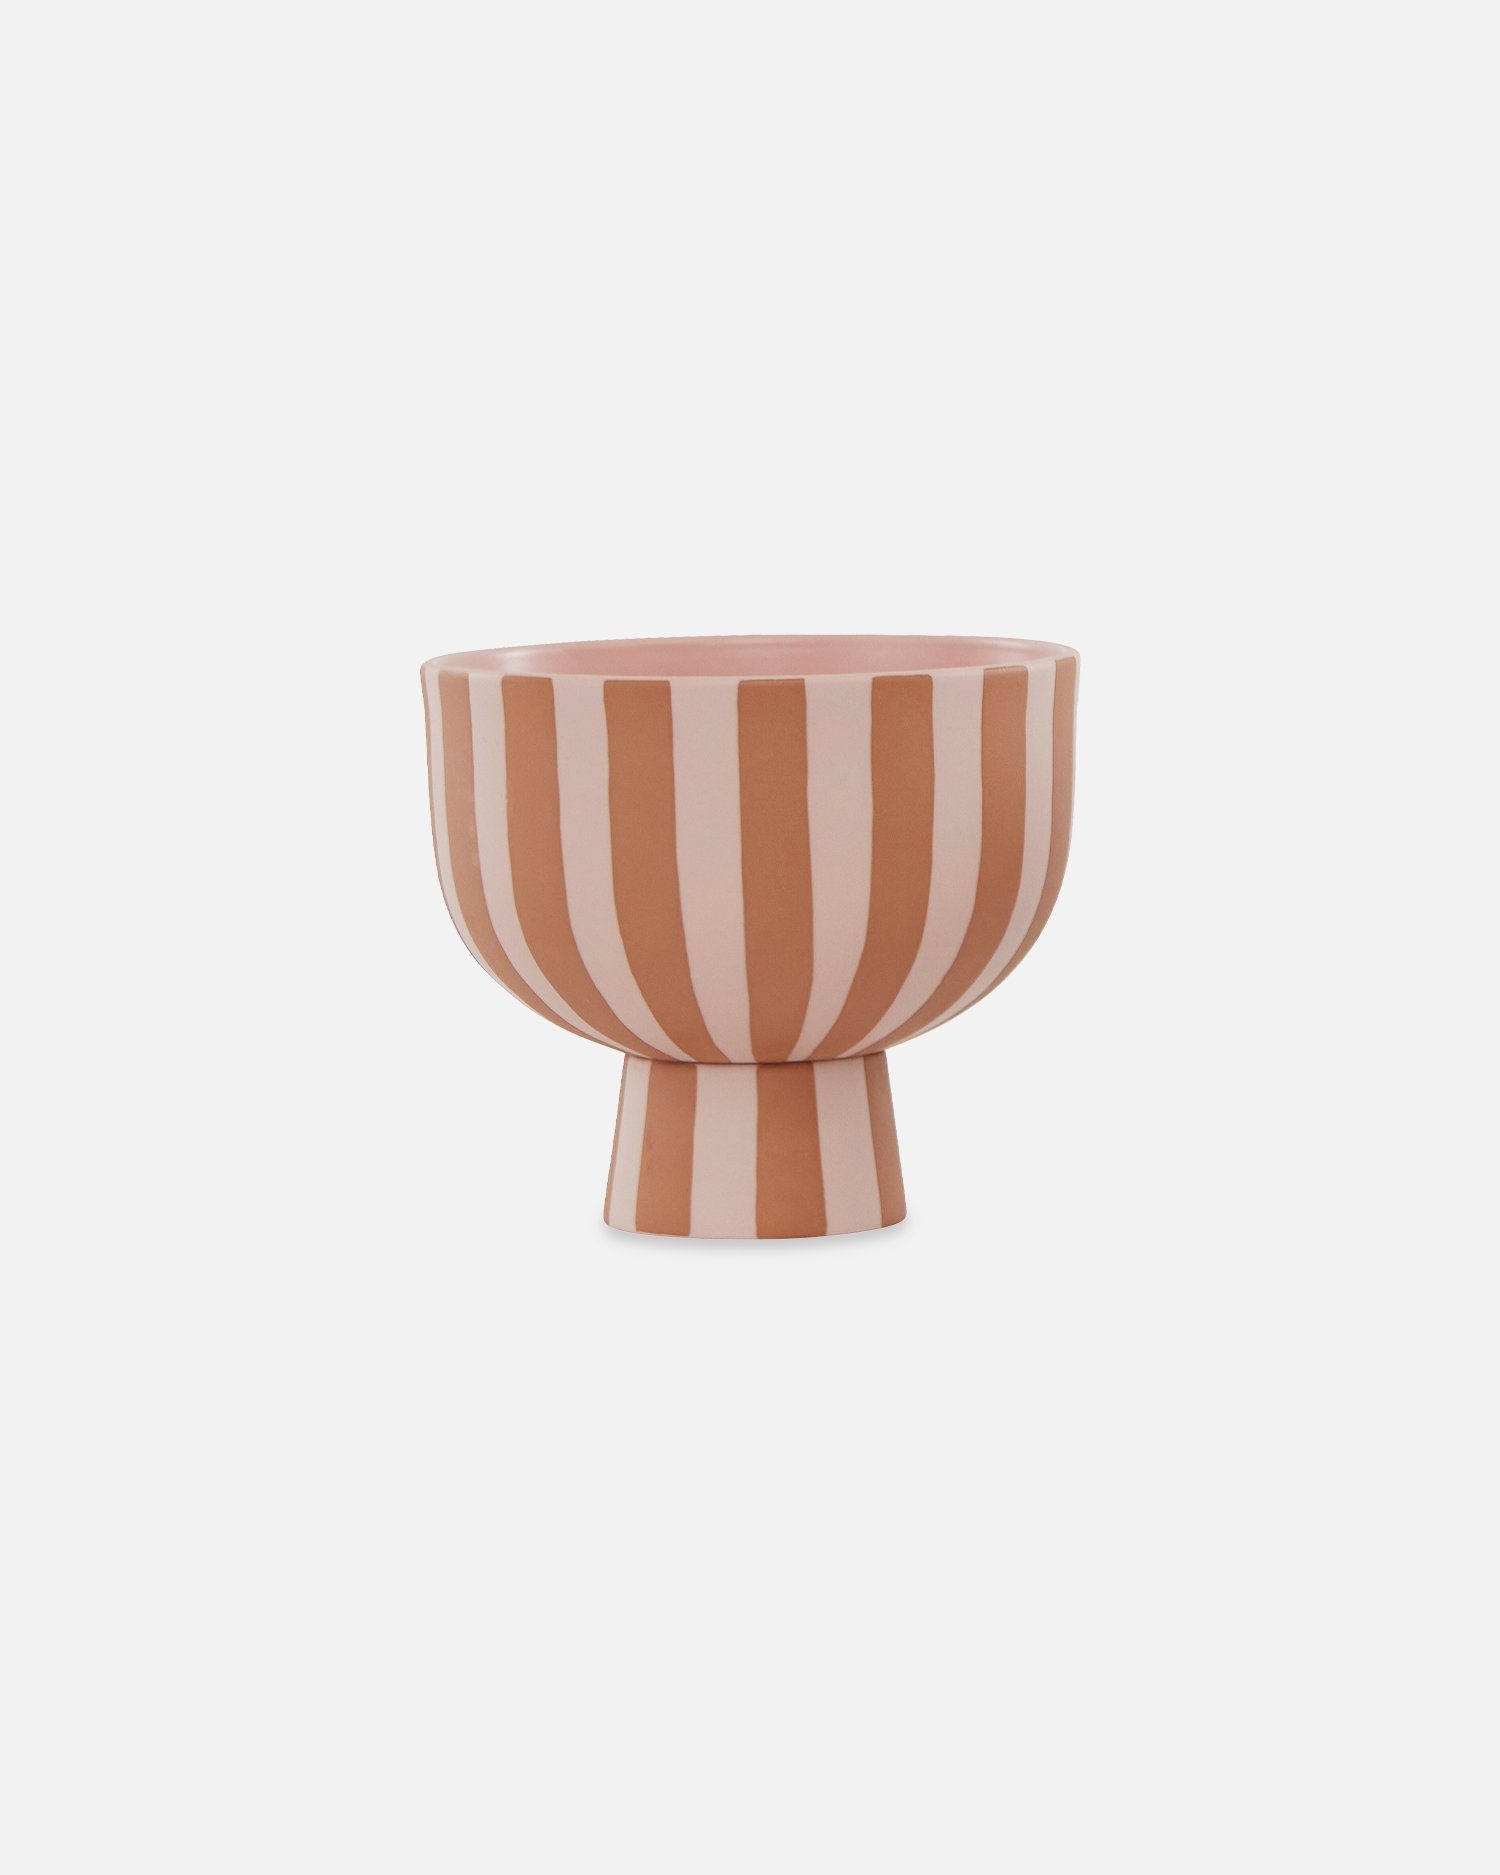 OYOY Dekoschüssel Toppu Bowl - Dekoschale Gestreift aus Keramik - Ø15 x H13 cm, Karamell/Rosa